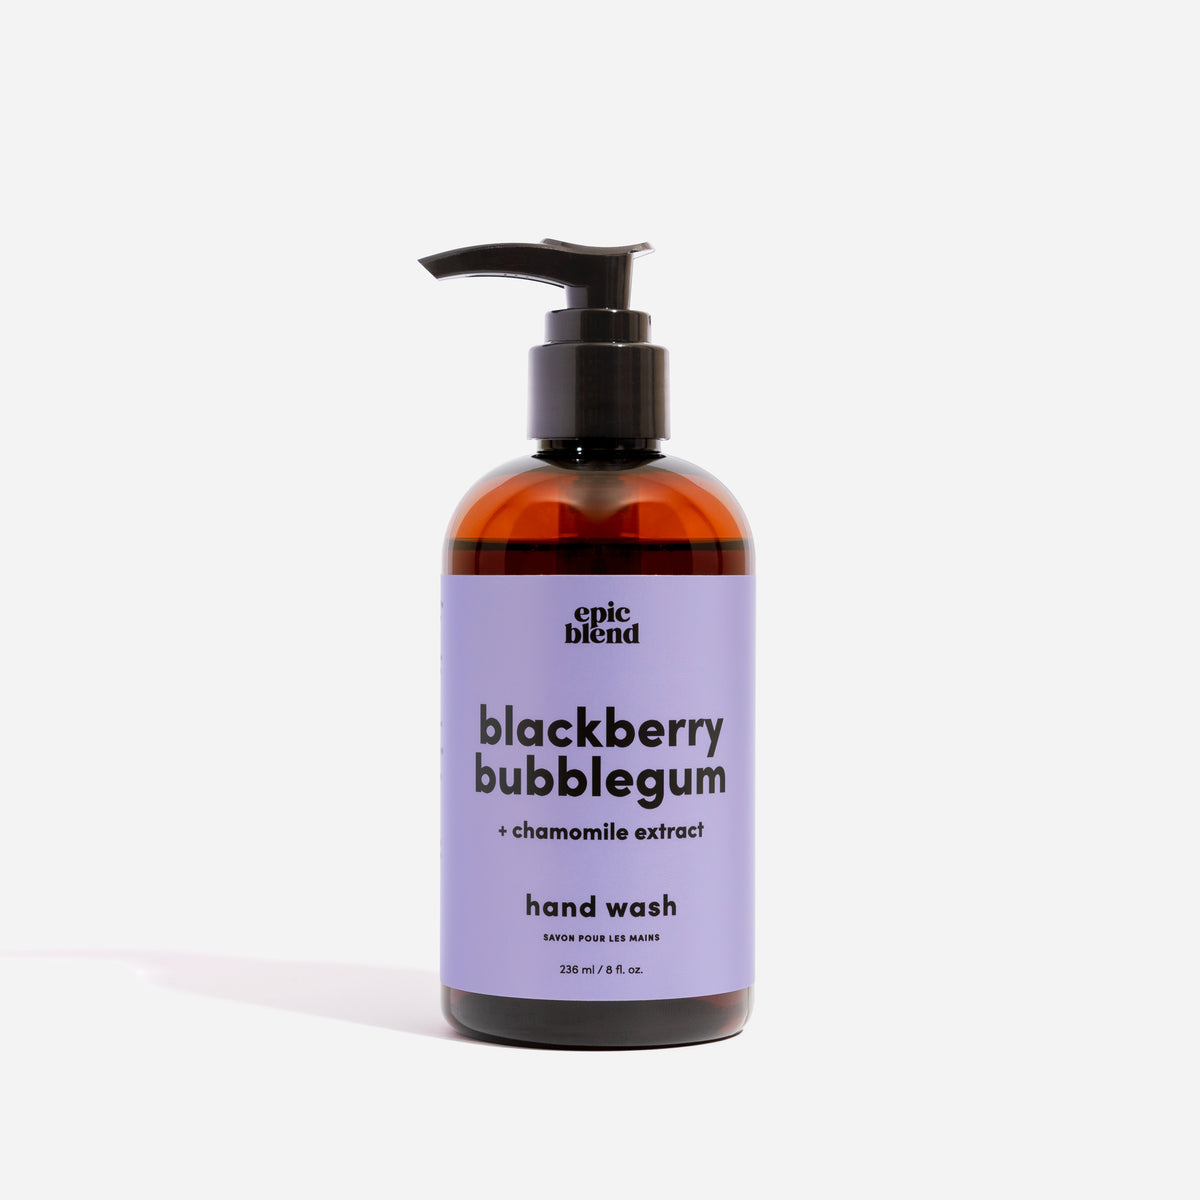 Blackberry Bubblegum Hand Wash